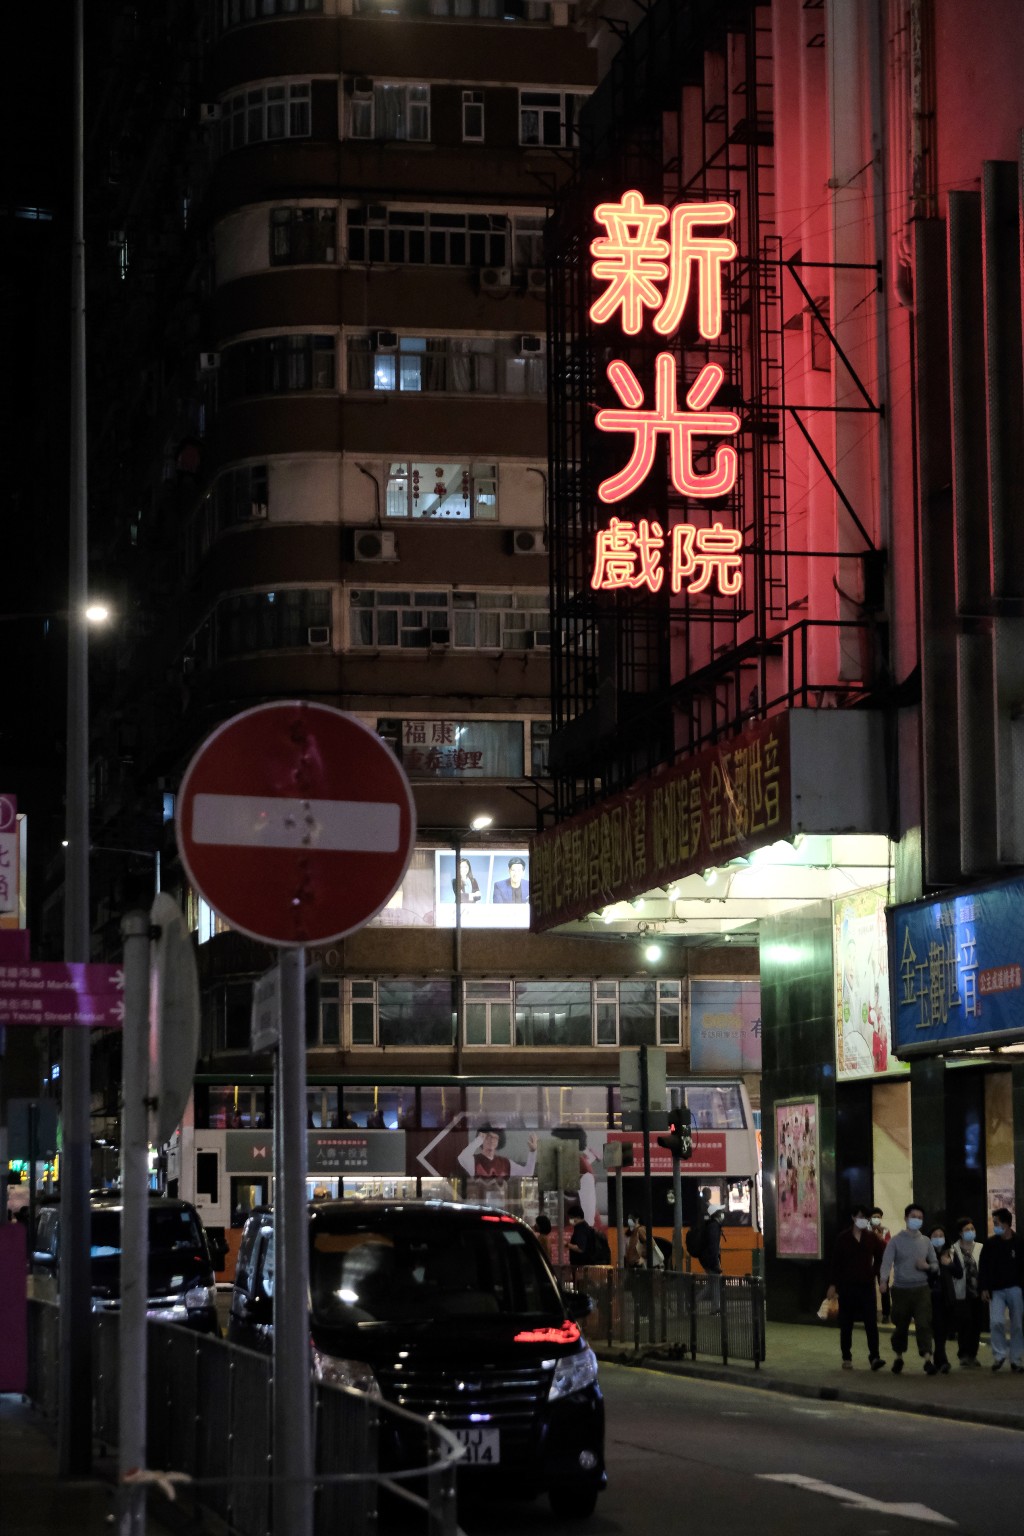 作為粵劇殿堂的新光戲院乃香港人的集體回憶。